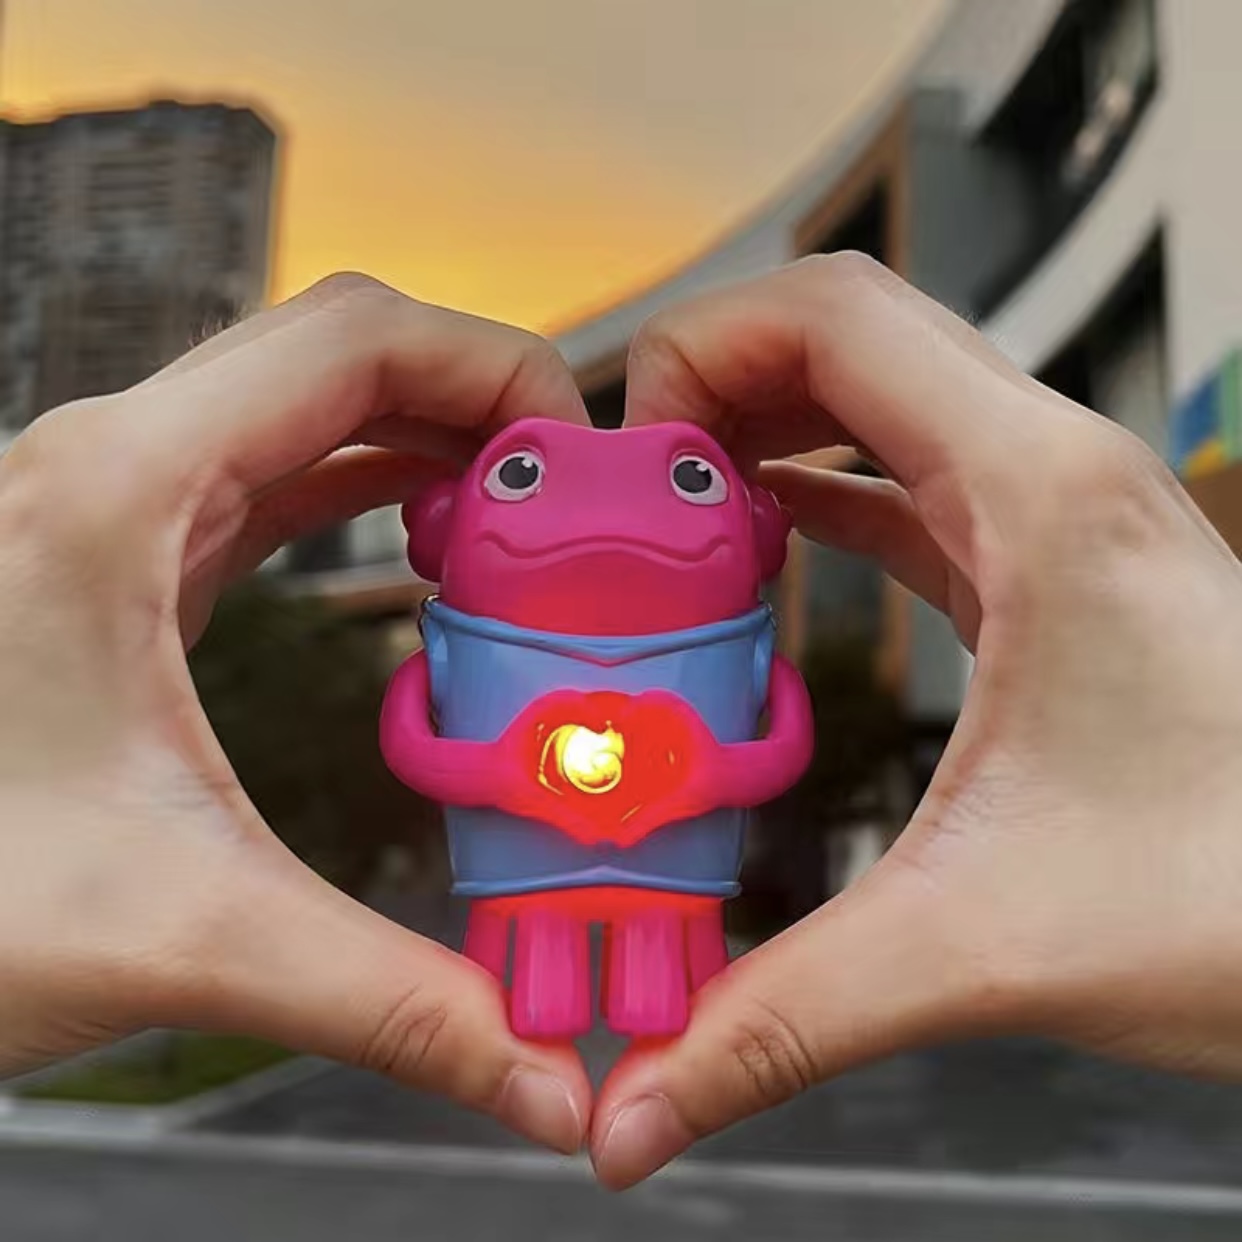 可爱疯狂外星人笔芯发光玩具送朋友情侣创意趣味生日礼物人偶玩具